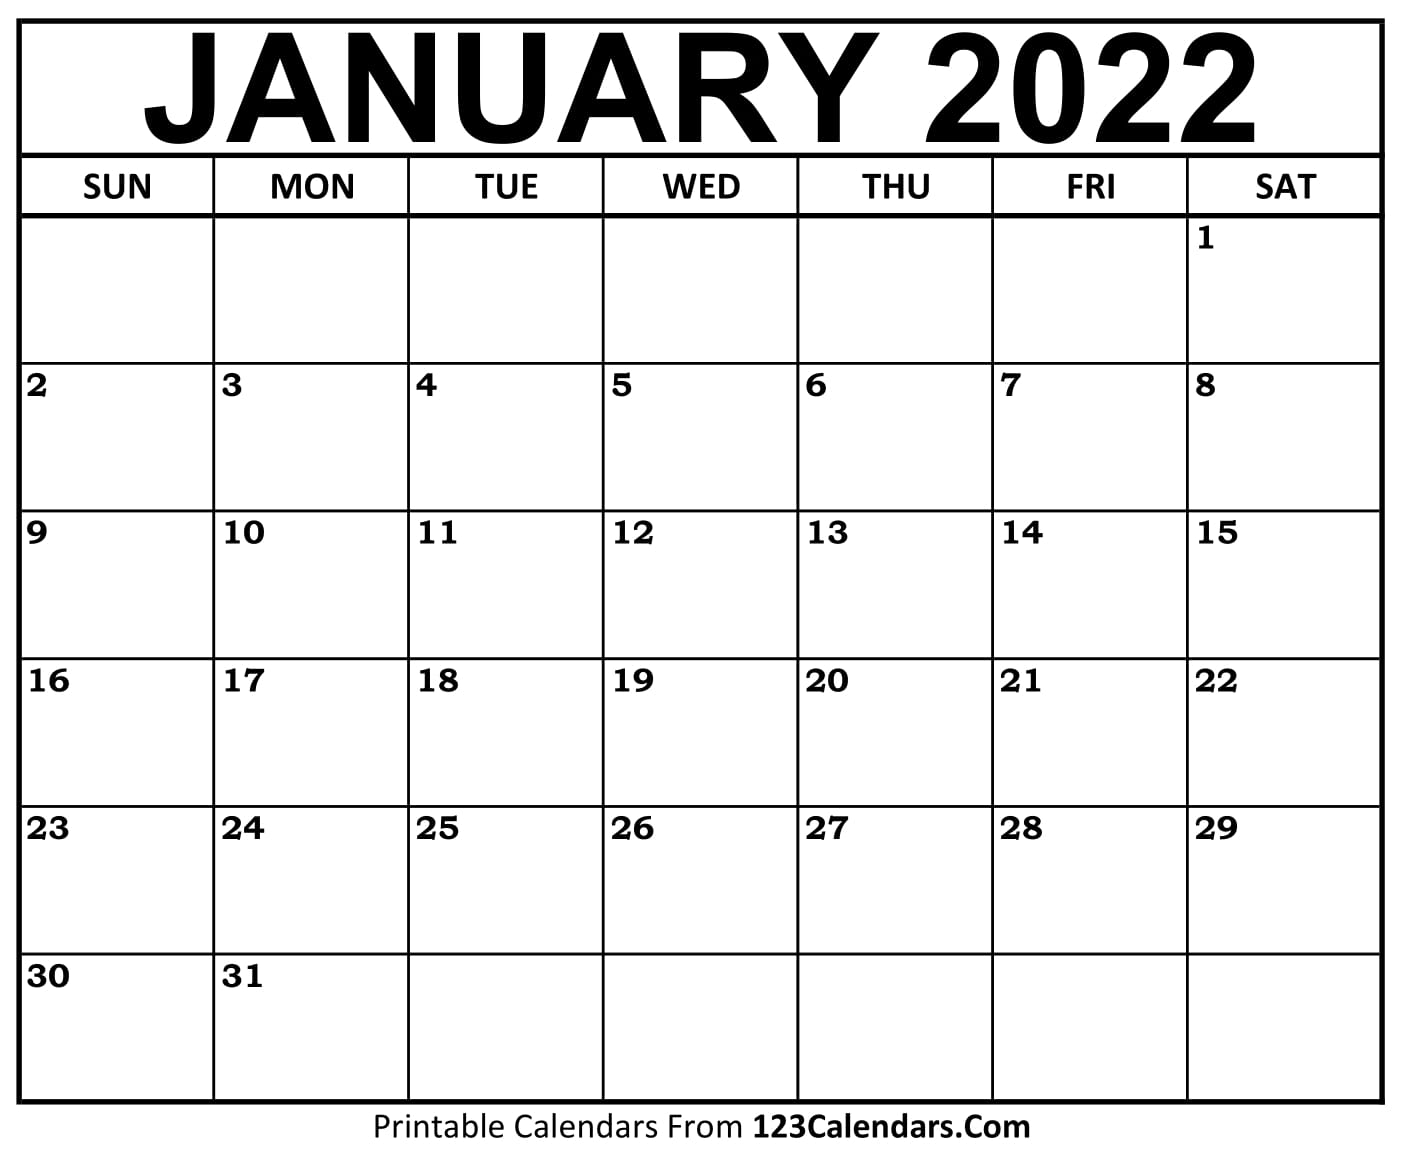 Free January Calendar 2022 Printable January 2022 Calendar Templates - 123Calendars.com